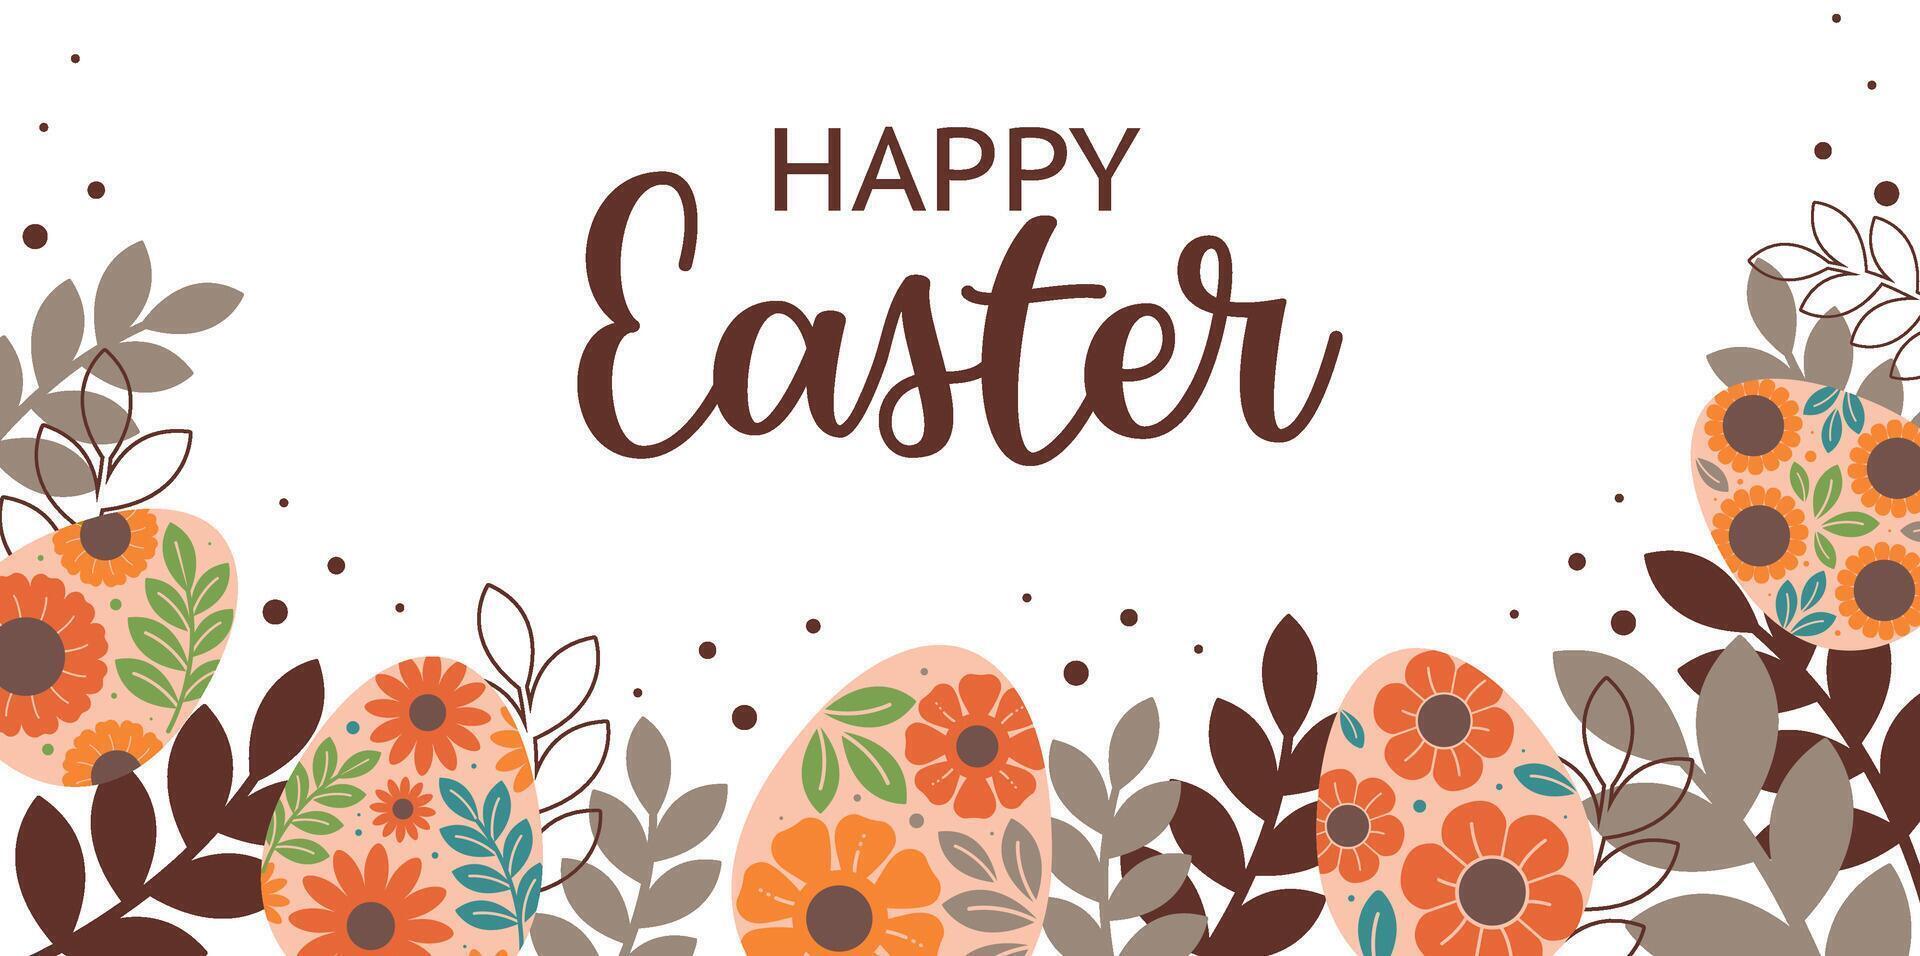 benner para contento Pascua de Resurrección con huevos, flores hojas y letras vector